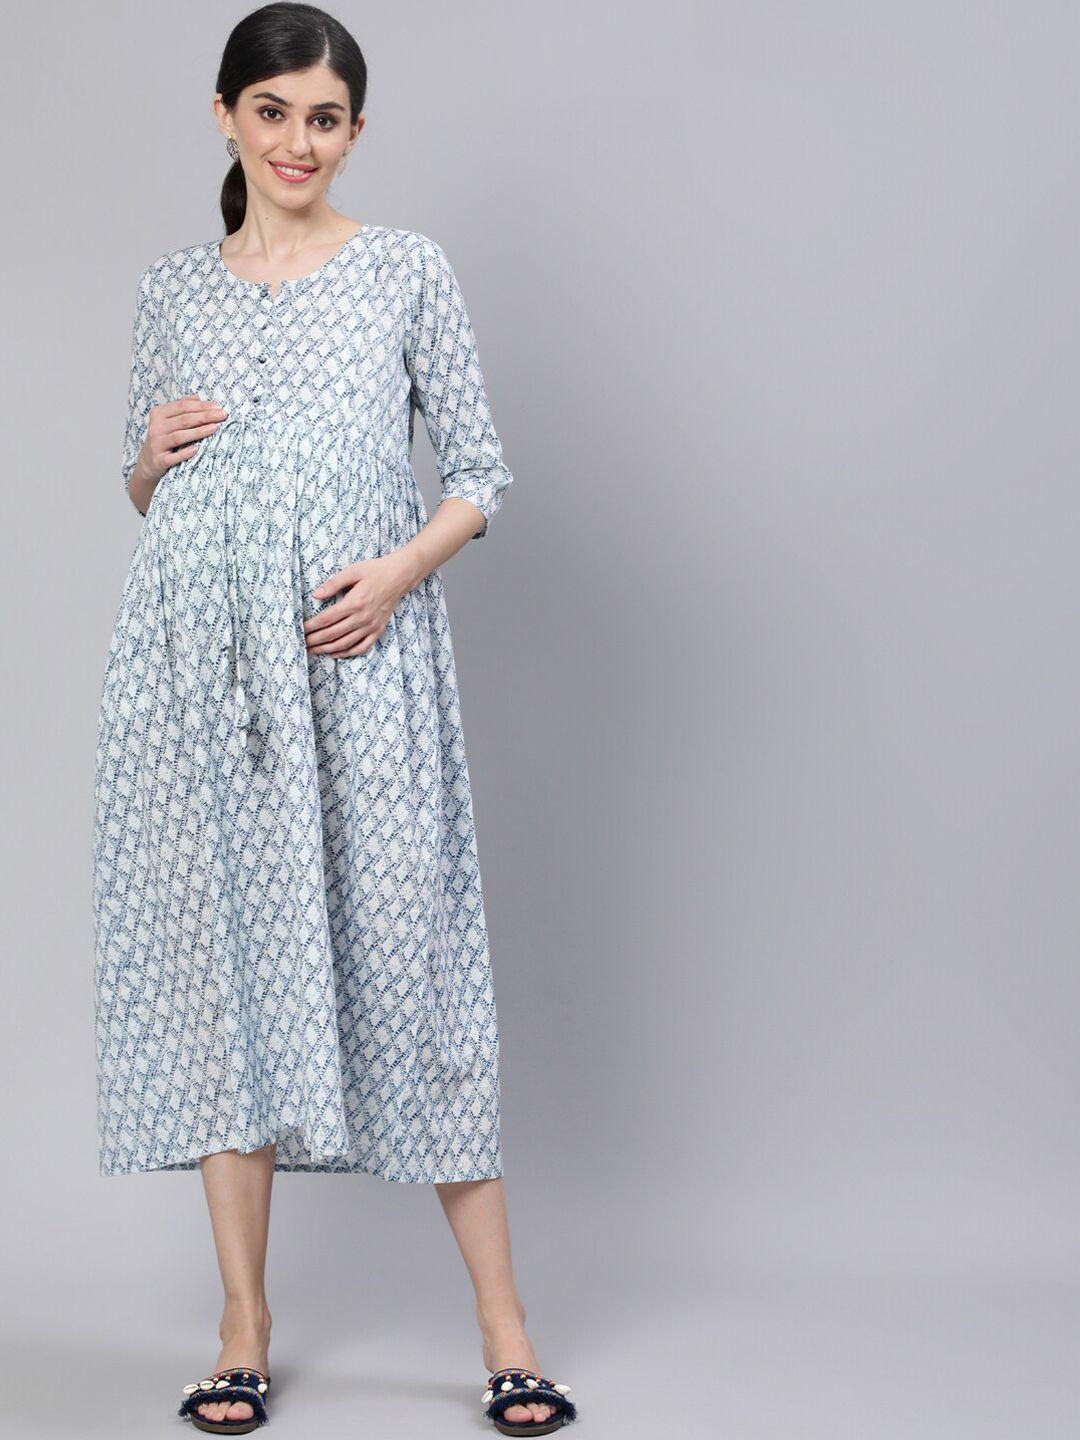 nayo off white ethnic motifs maternity nursing a-line midi dress